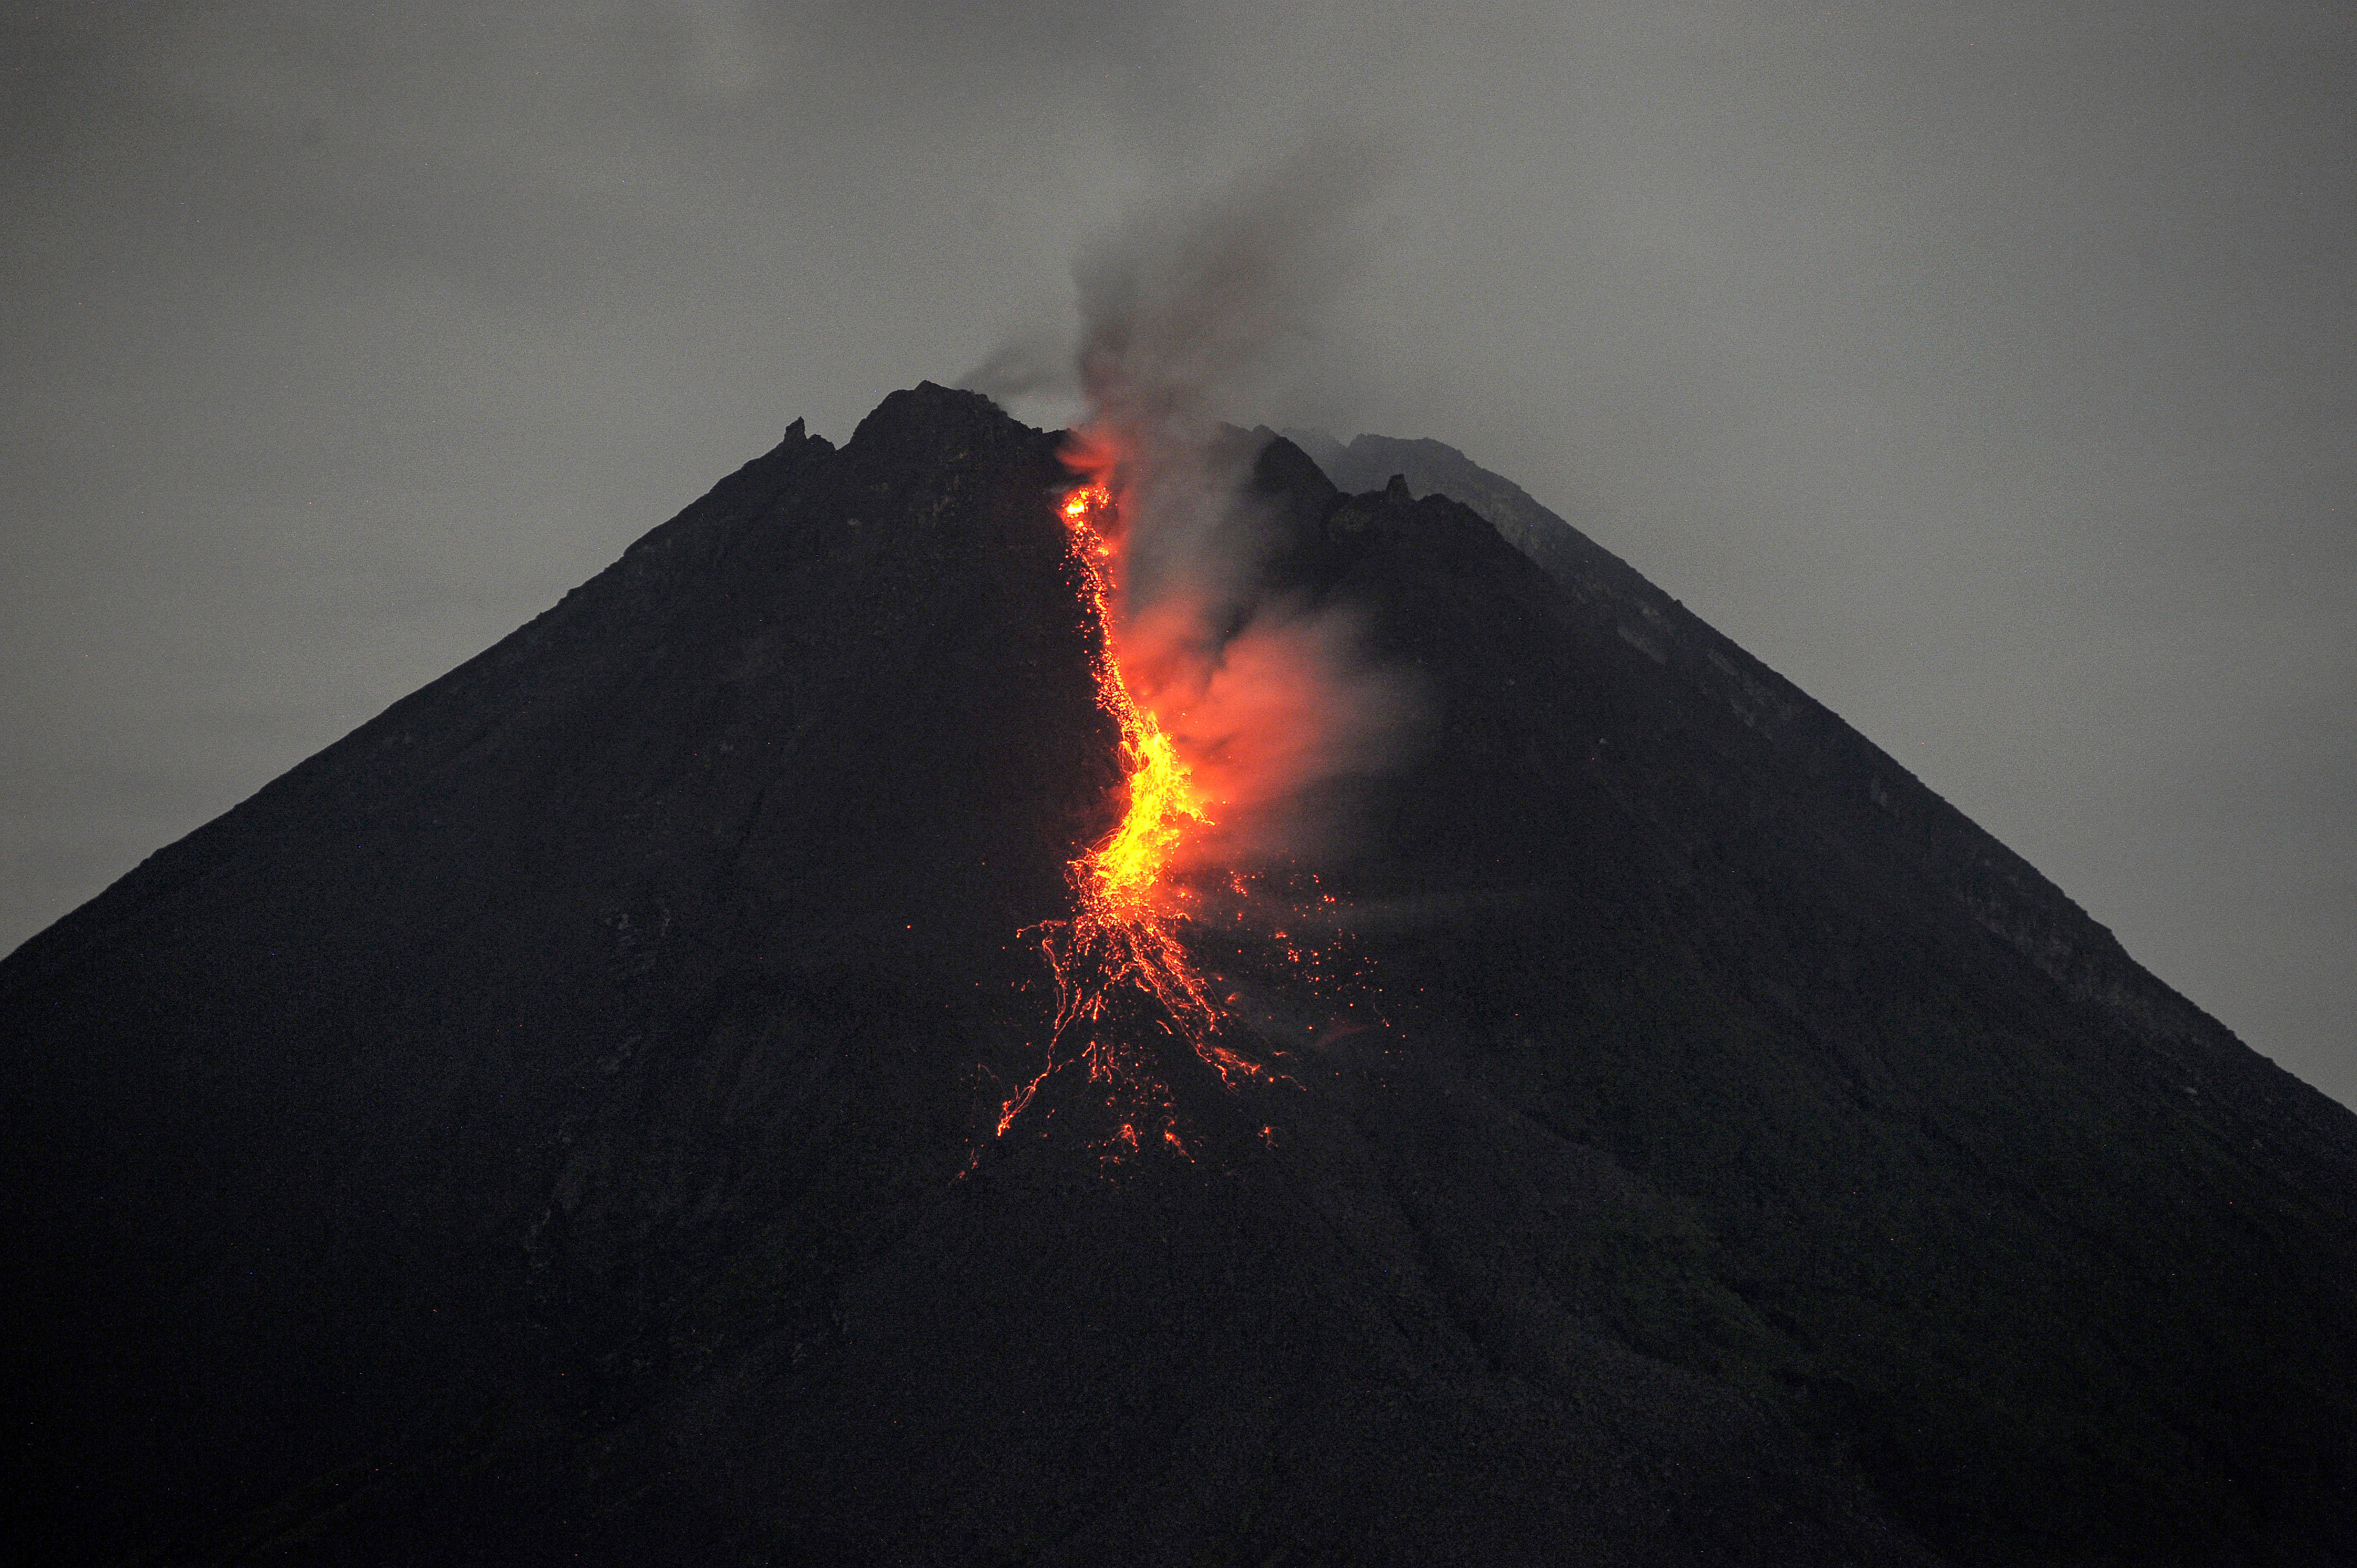 火山照片喷射图片